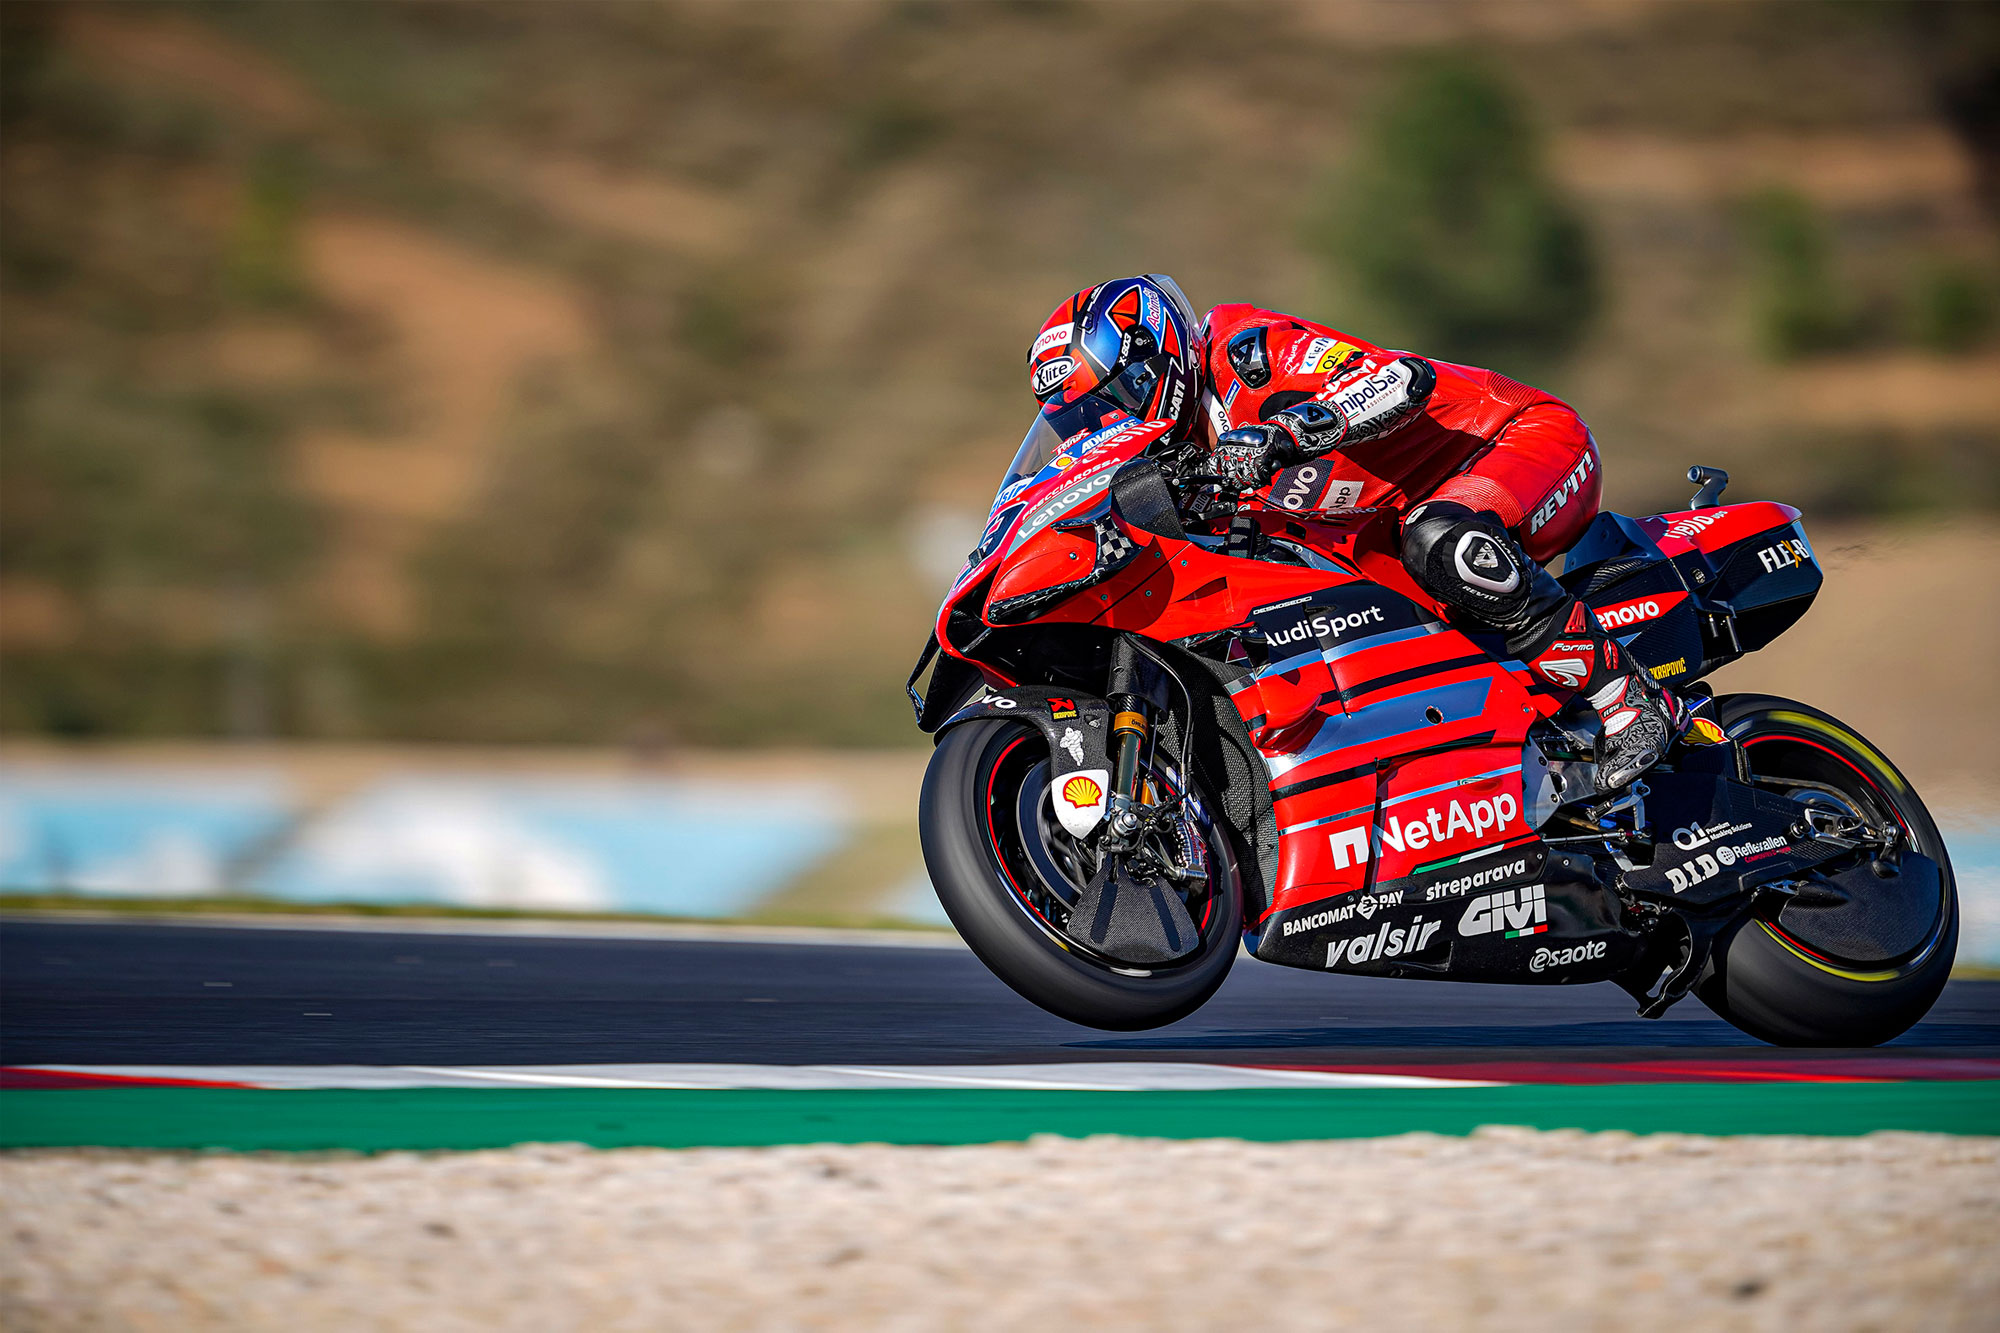 Η Ducati στο MotoGP για τα επόμενα πέντε χρόνια